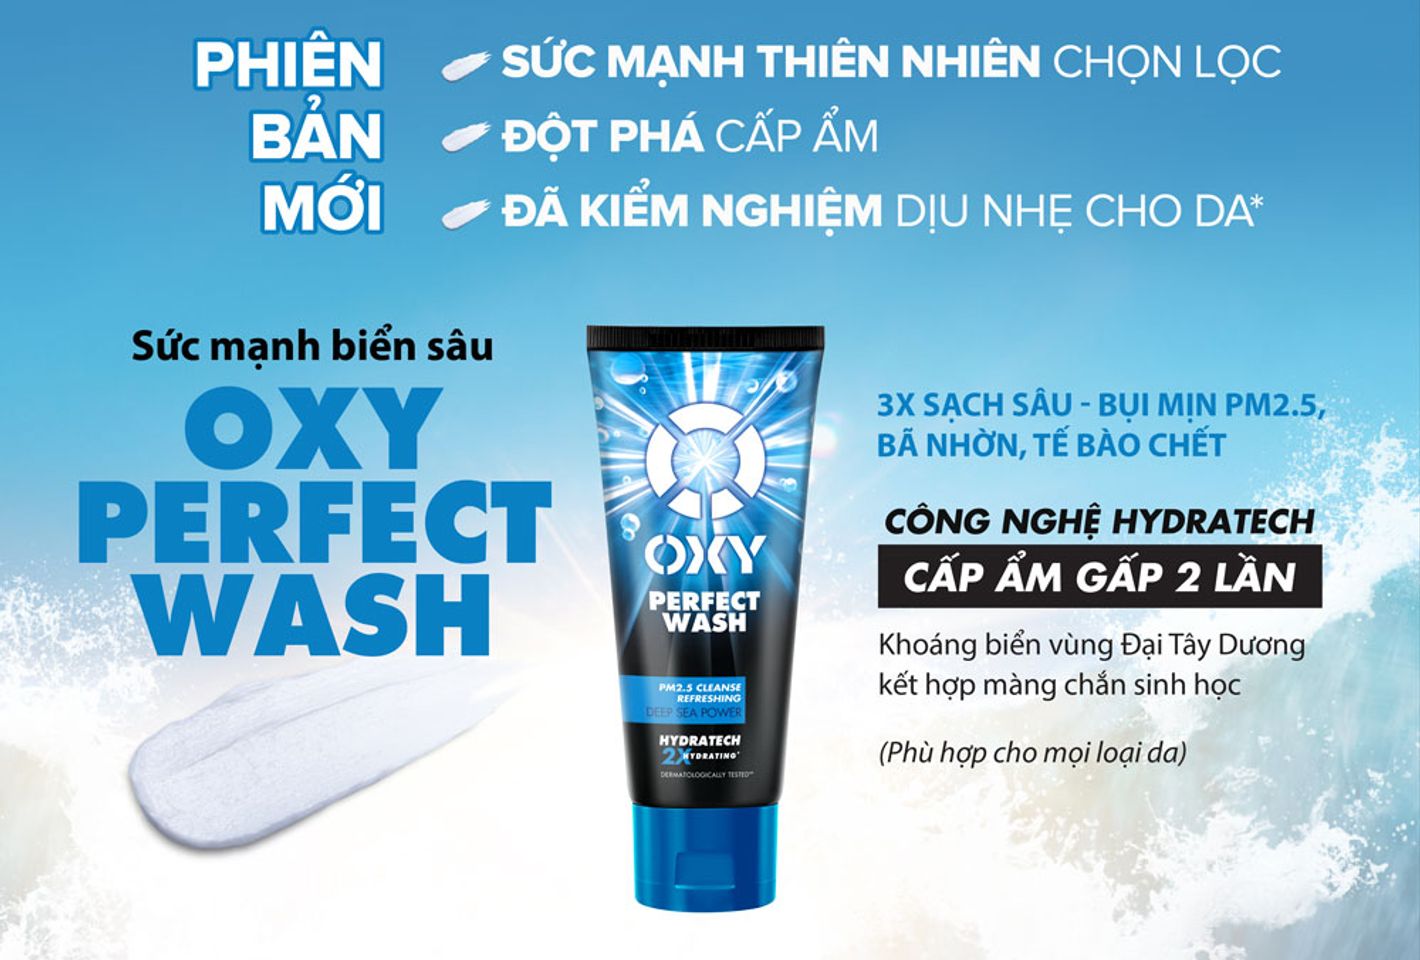 Kem Rửa Mặt OXY Perfect Wash giúp làm sạch sâu bụi mịn PM2.5 gấp 3 lần, loại bỏ bã nhờn và tế bào chết hiệu quả, cho làn da sảng khoái, cực mát lạnh.